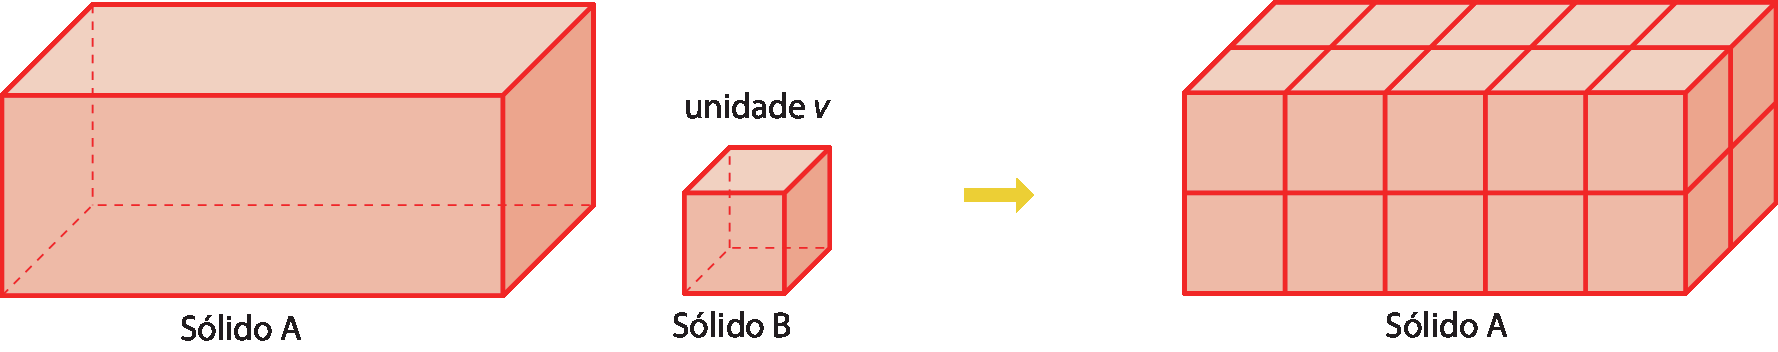 Ilustrações.
À esquerda, bloco retangular vermelho denominado Sólido A. À direita dele, bloco cúbico vermelho, menor que o bloco anterior, denominado Sólido B; acima dele, está escrito unidade v. Seta apontando para a direita para um bloco retangular vermelho chamado de Sólido A, composto por 20 blocos cúbicos, no formato do sólido B.